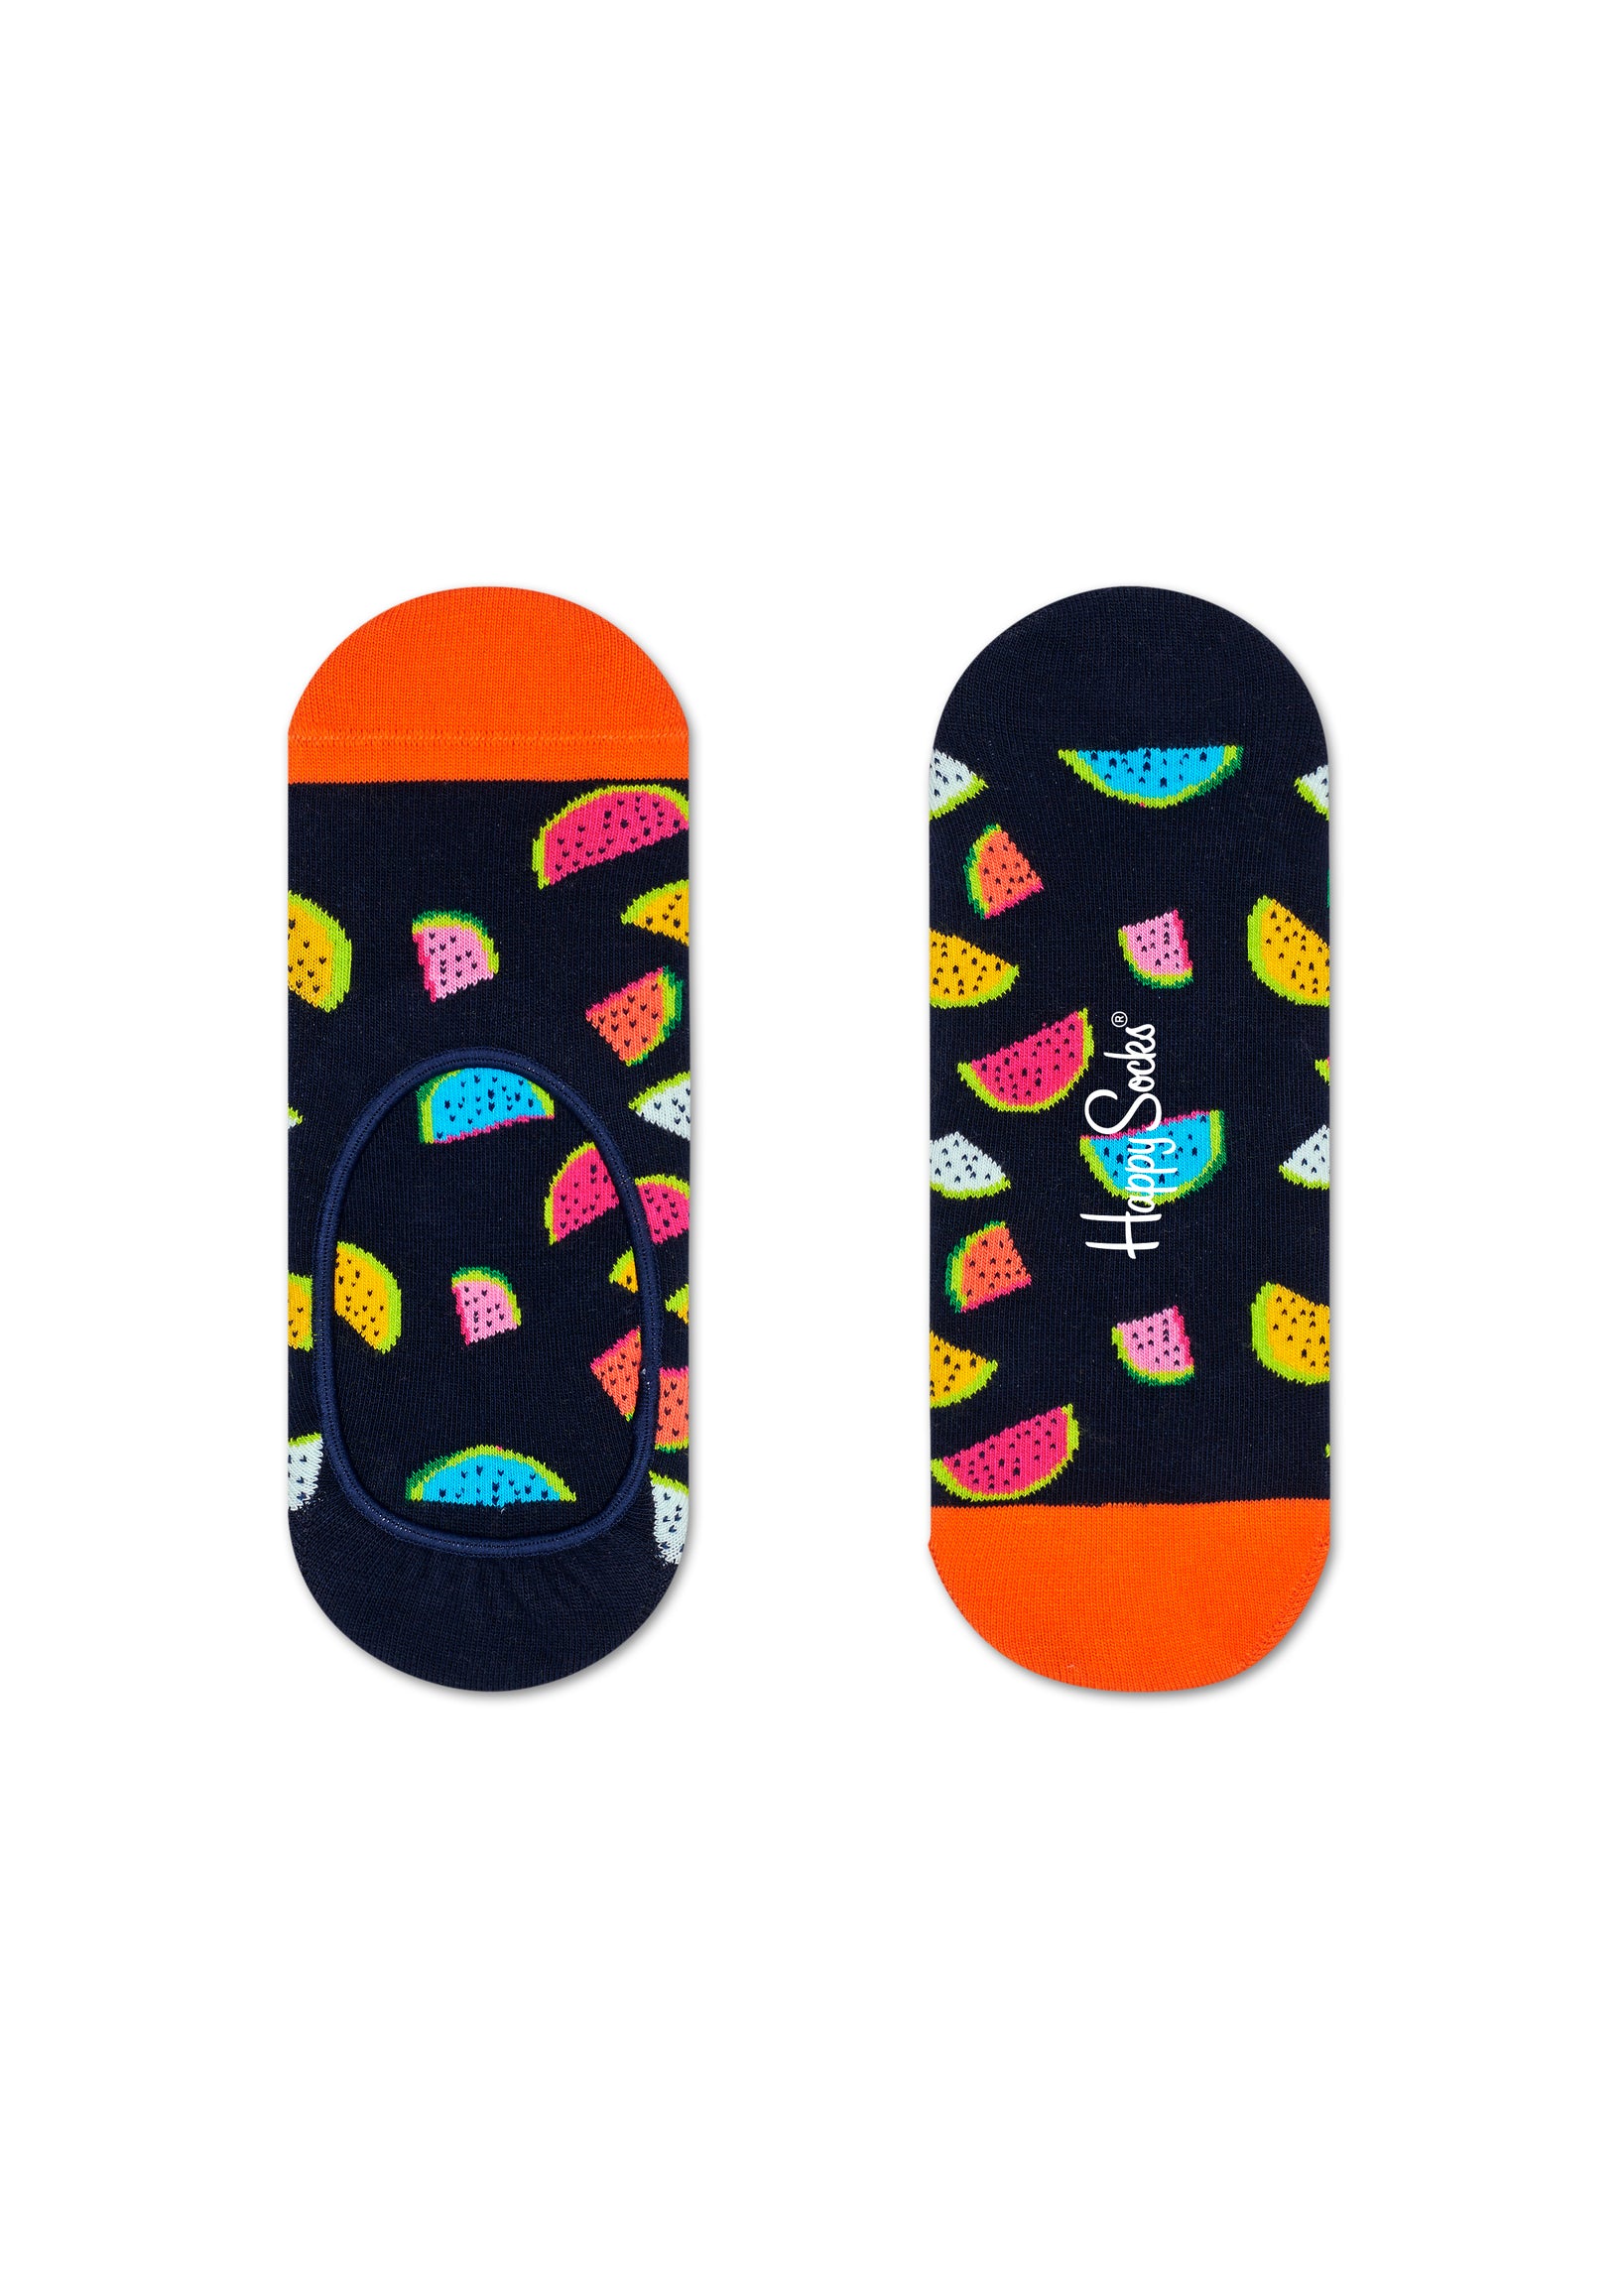 Nízké černé ponožky Happy Socks s melouny, vzor Watermelon